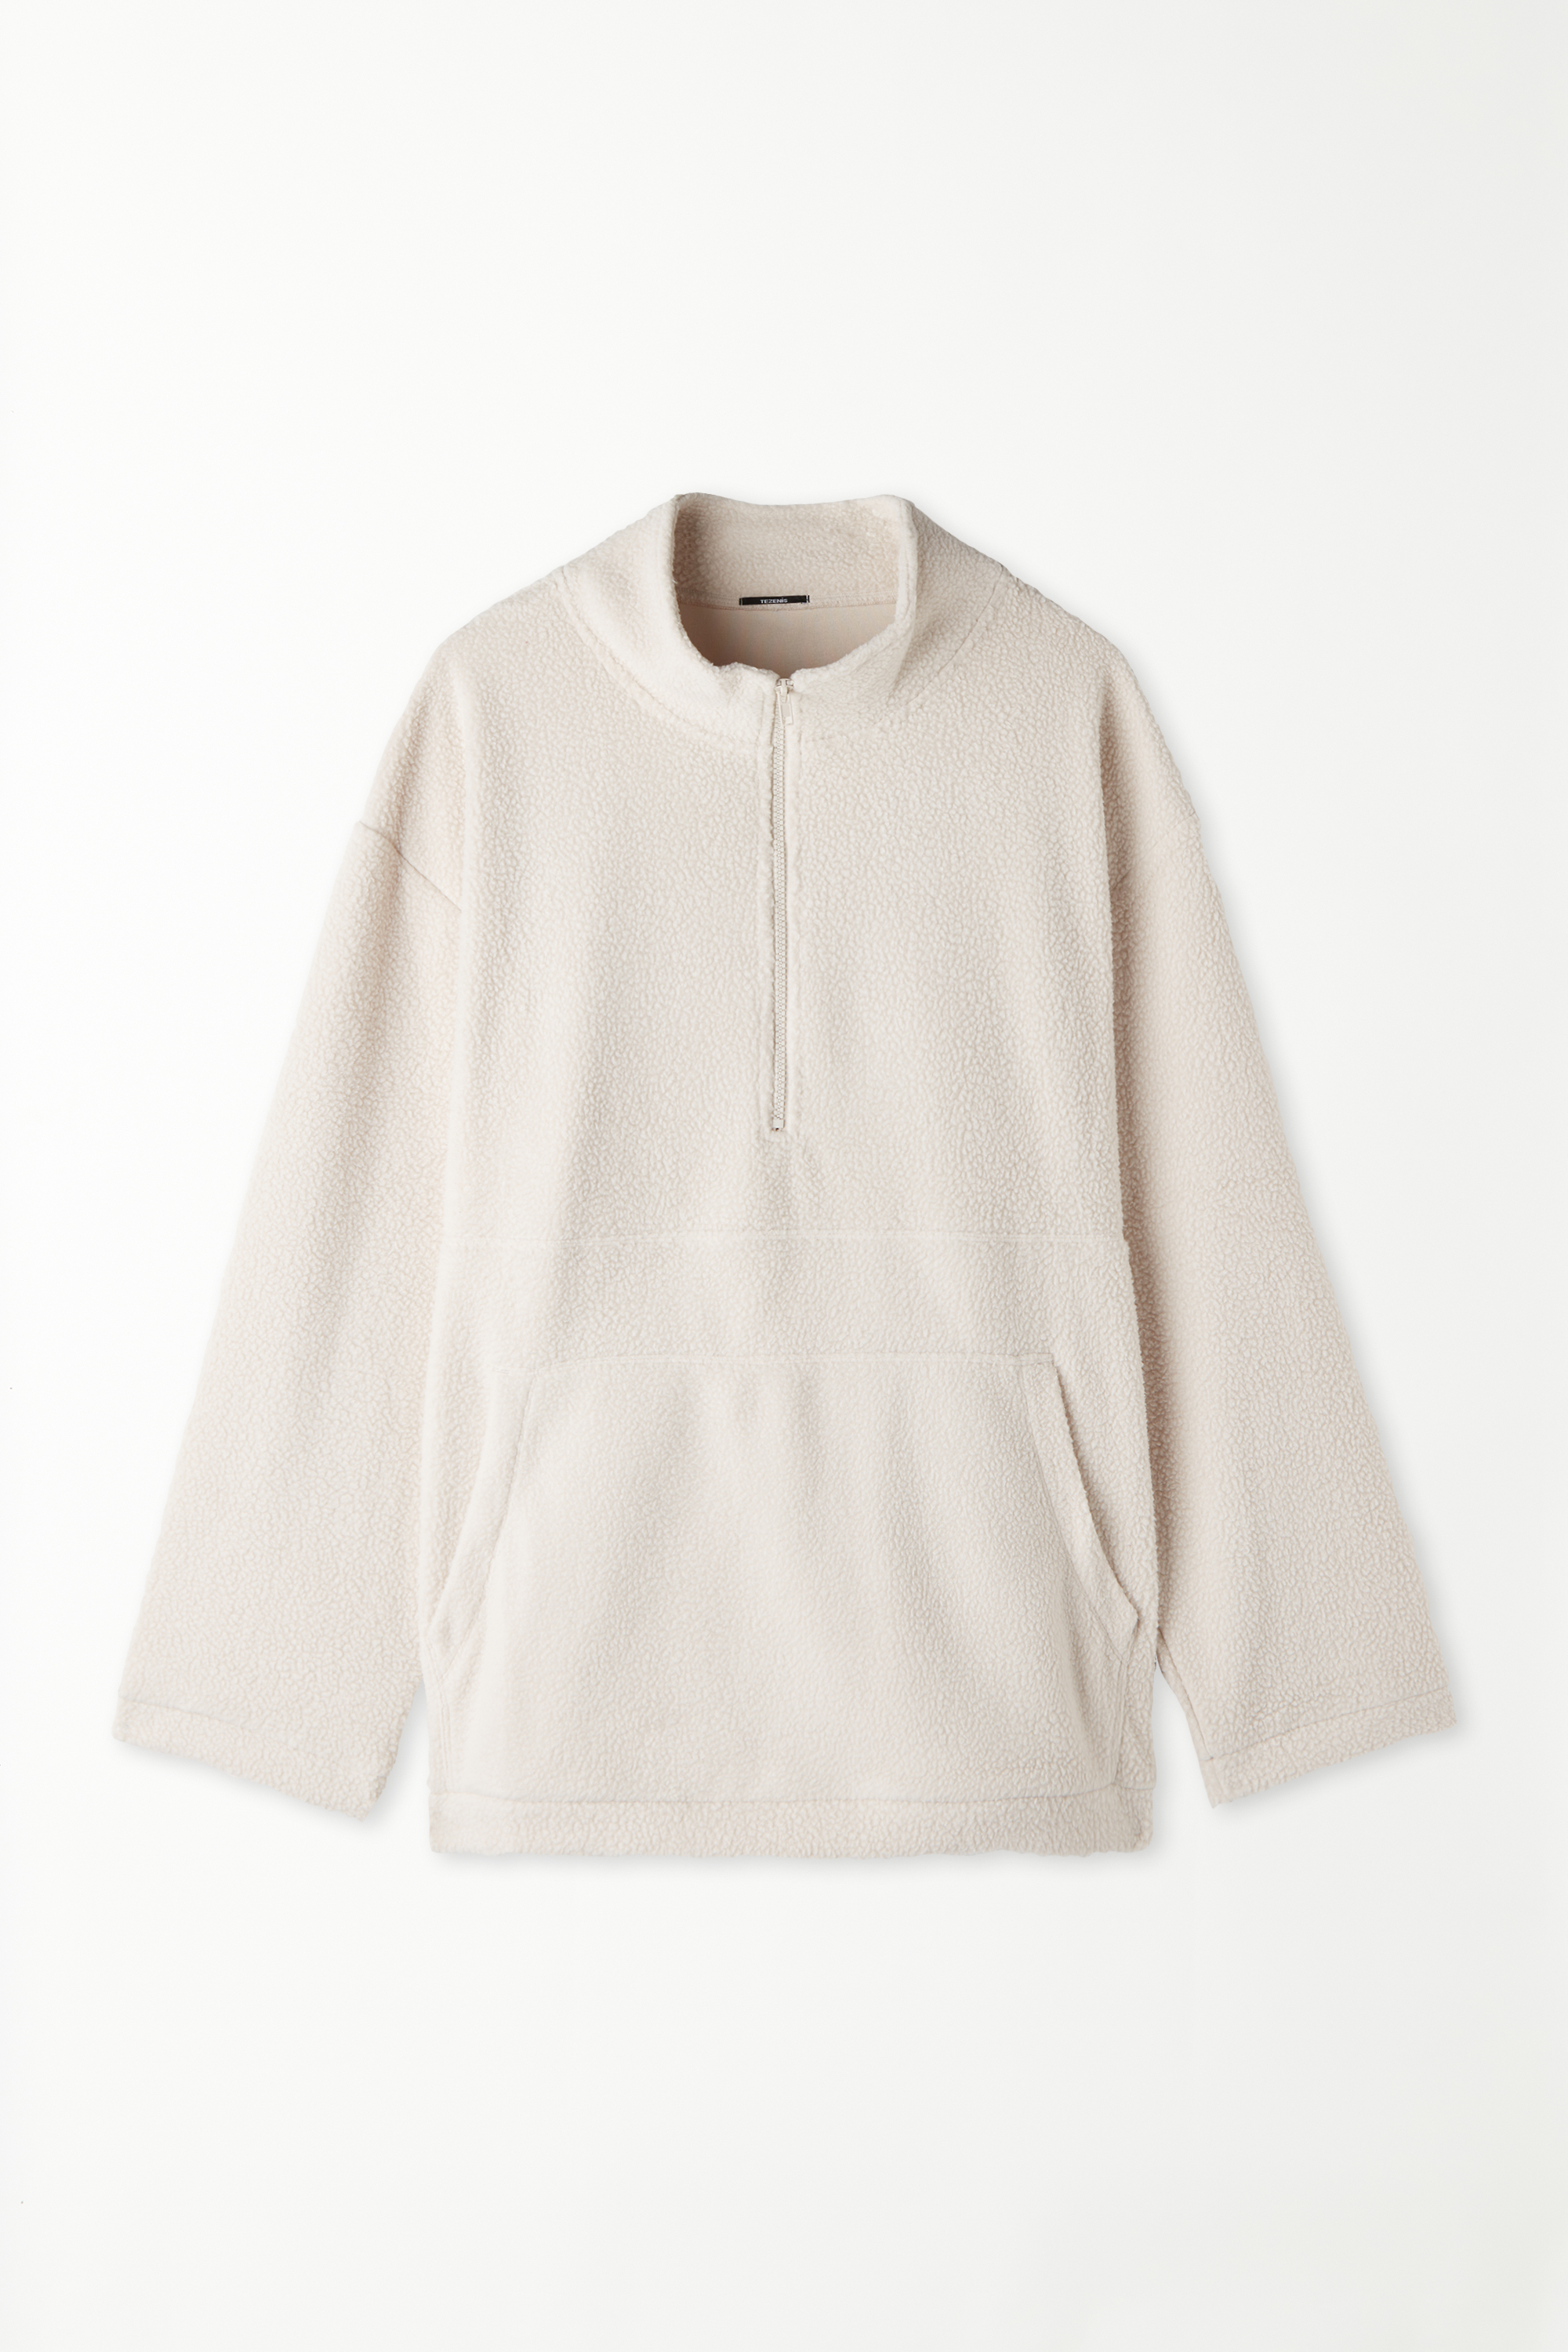 Long-Sleeved Gathered Fleece Sweatshirt with Pocket